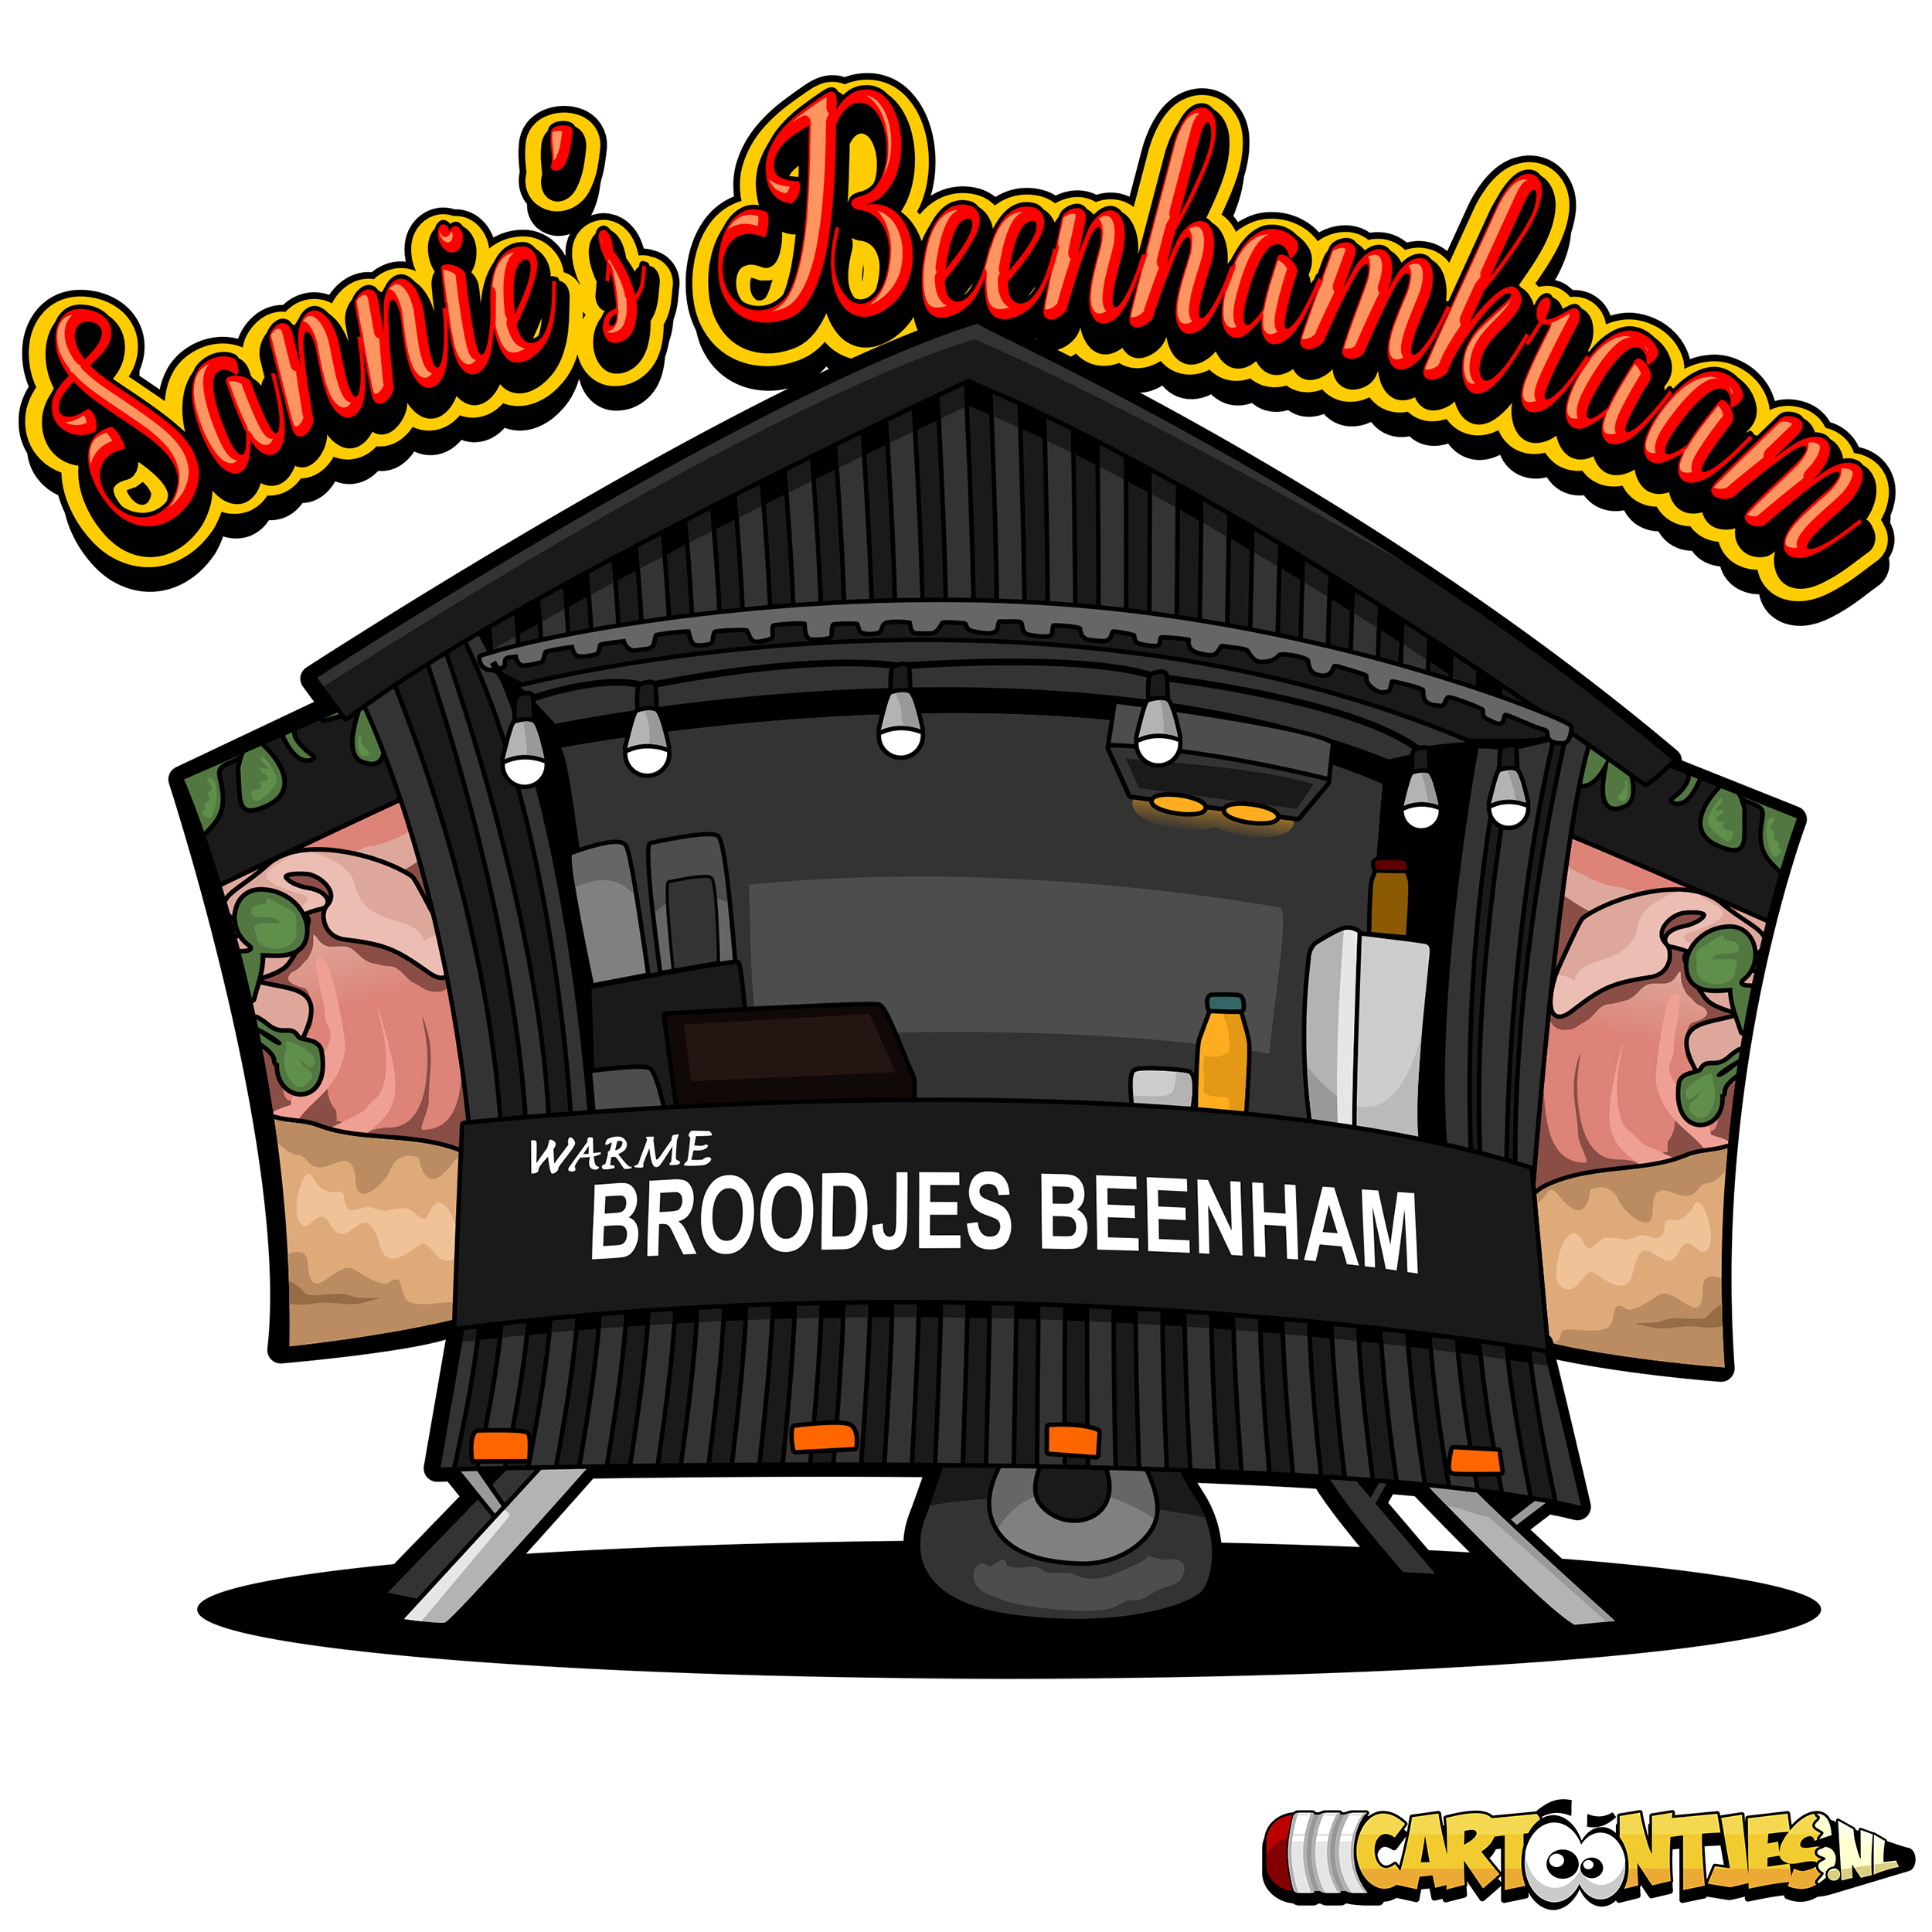 beenhamkraam logo